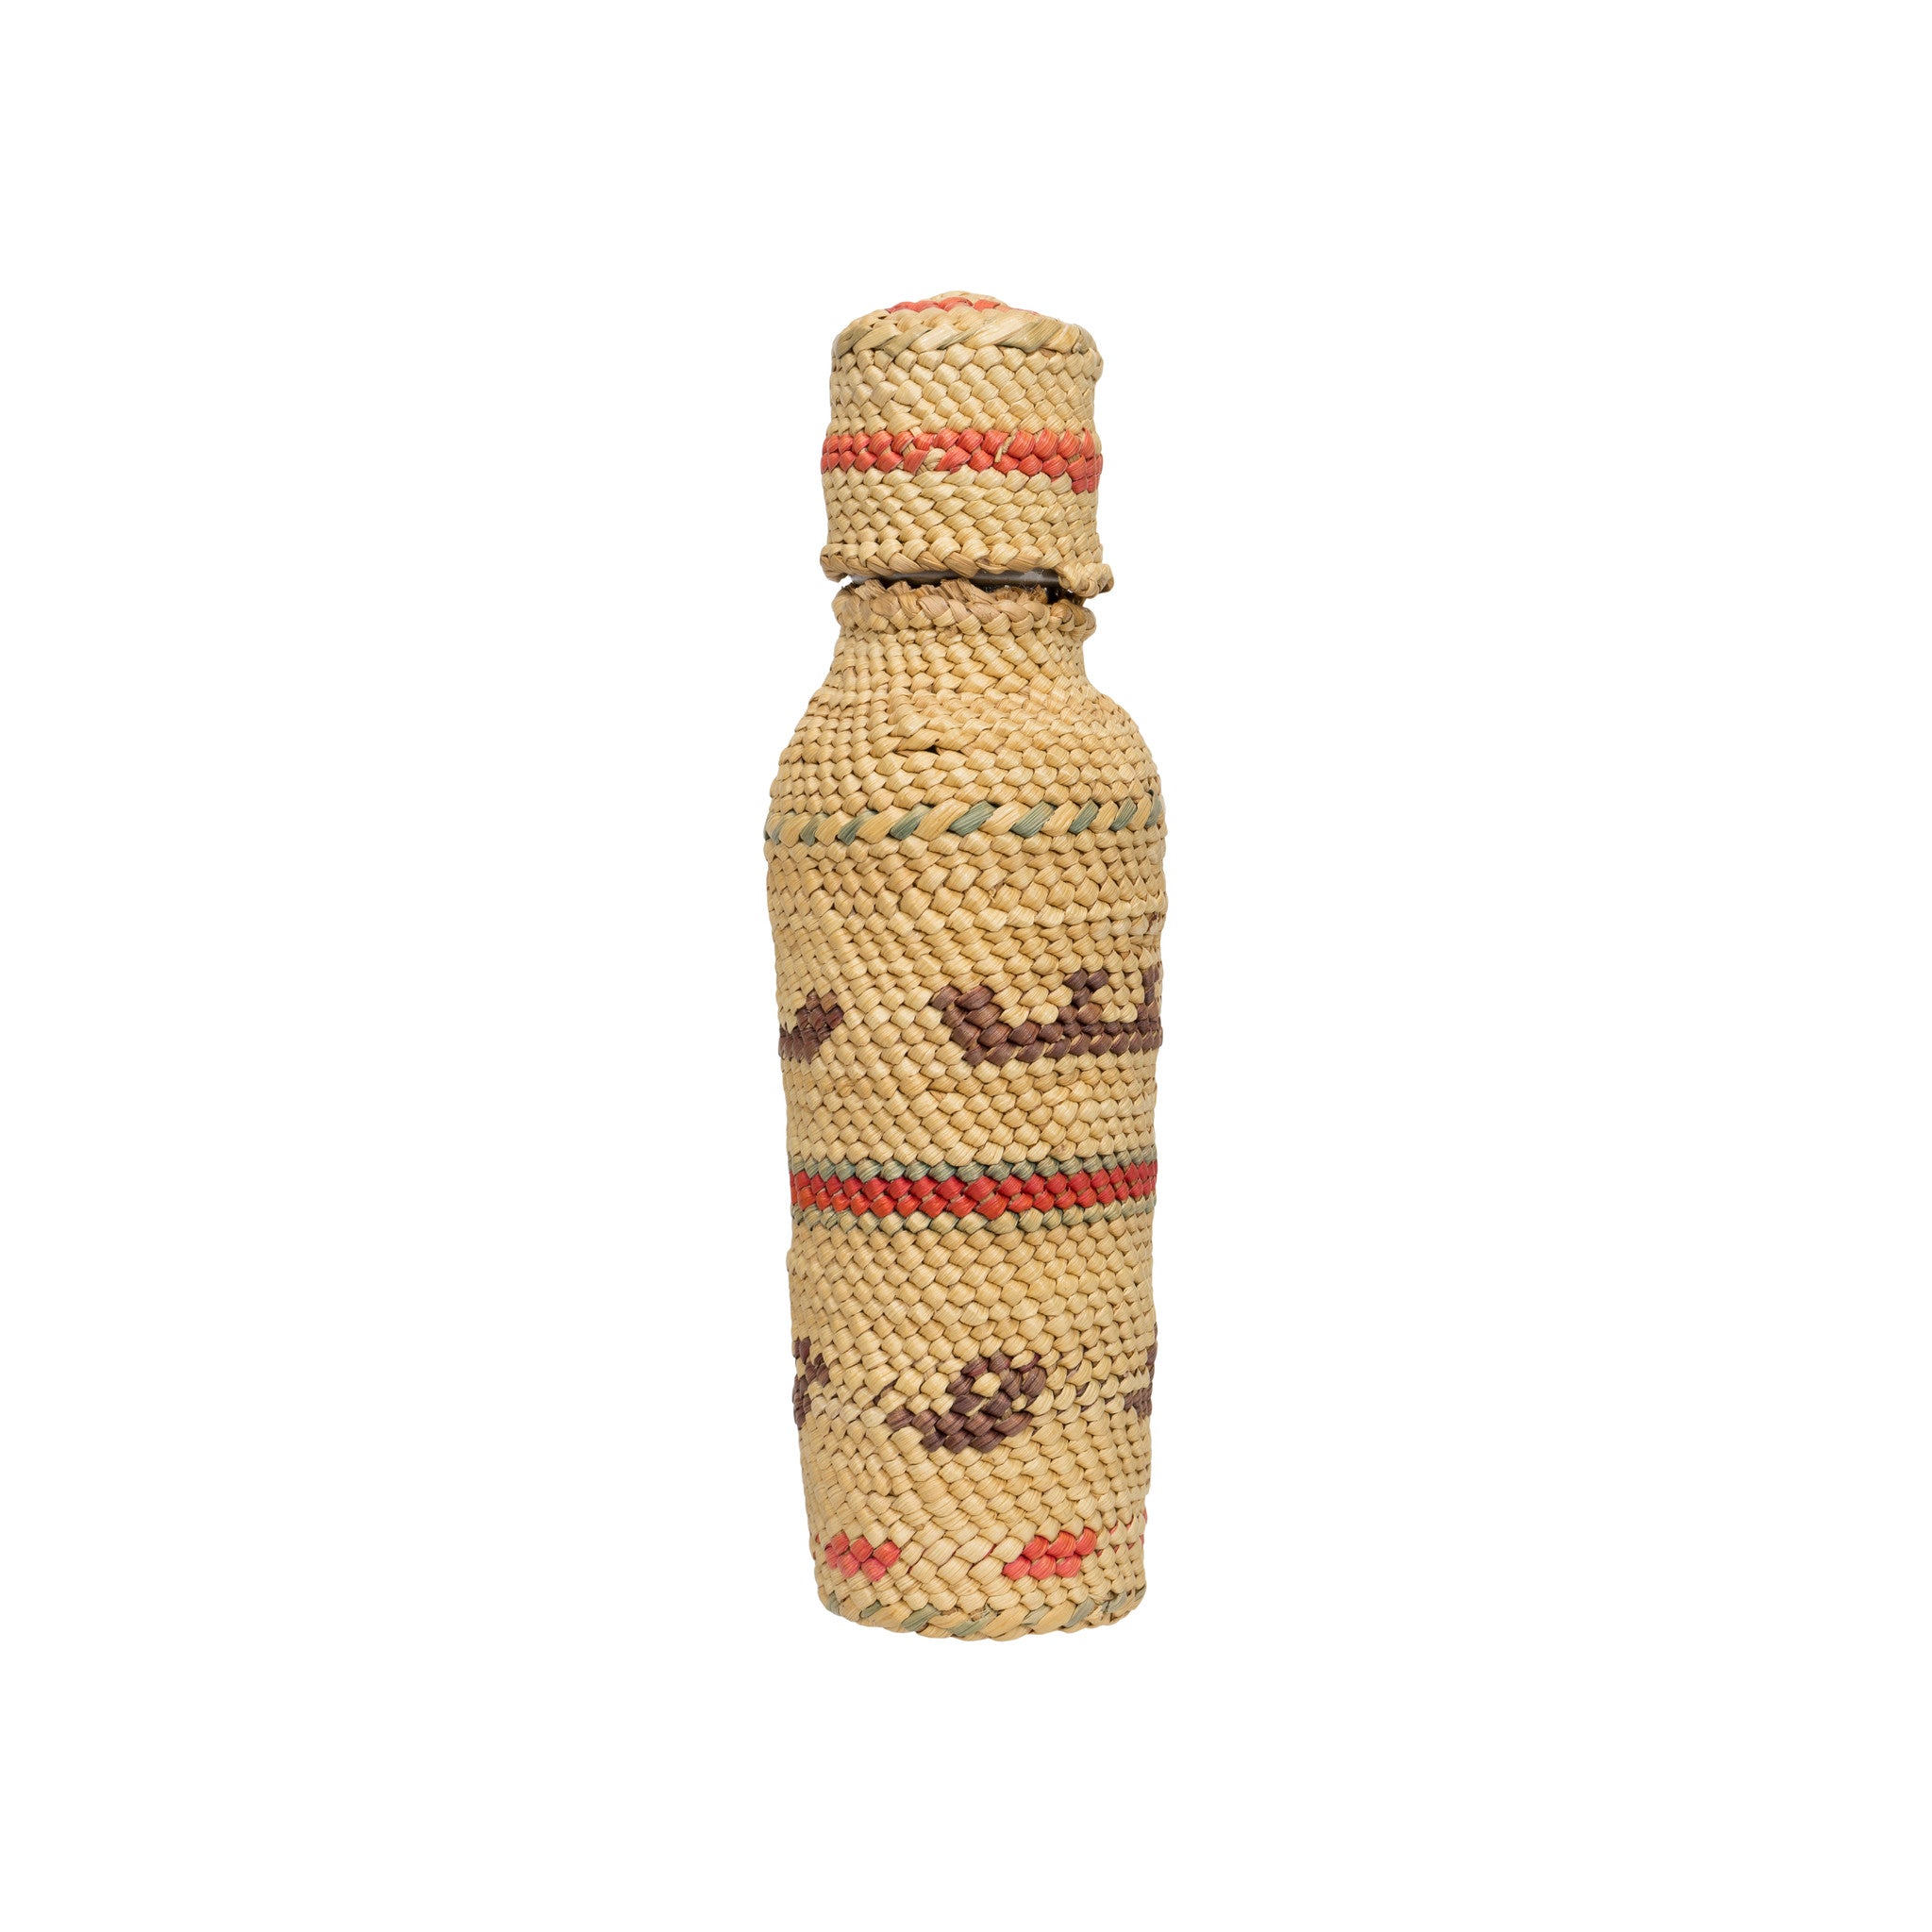 Makah Bottle Basket